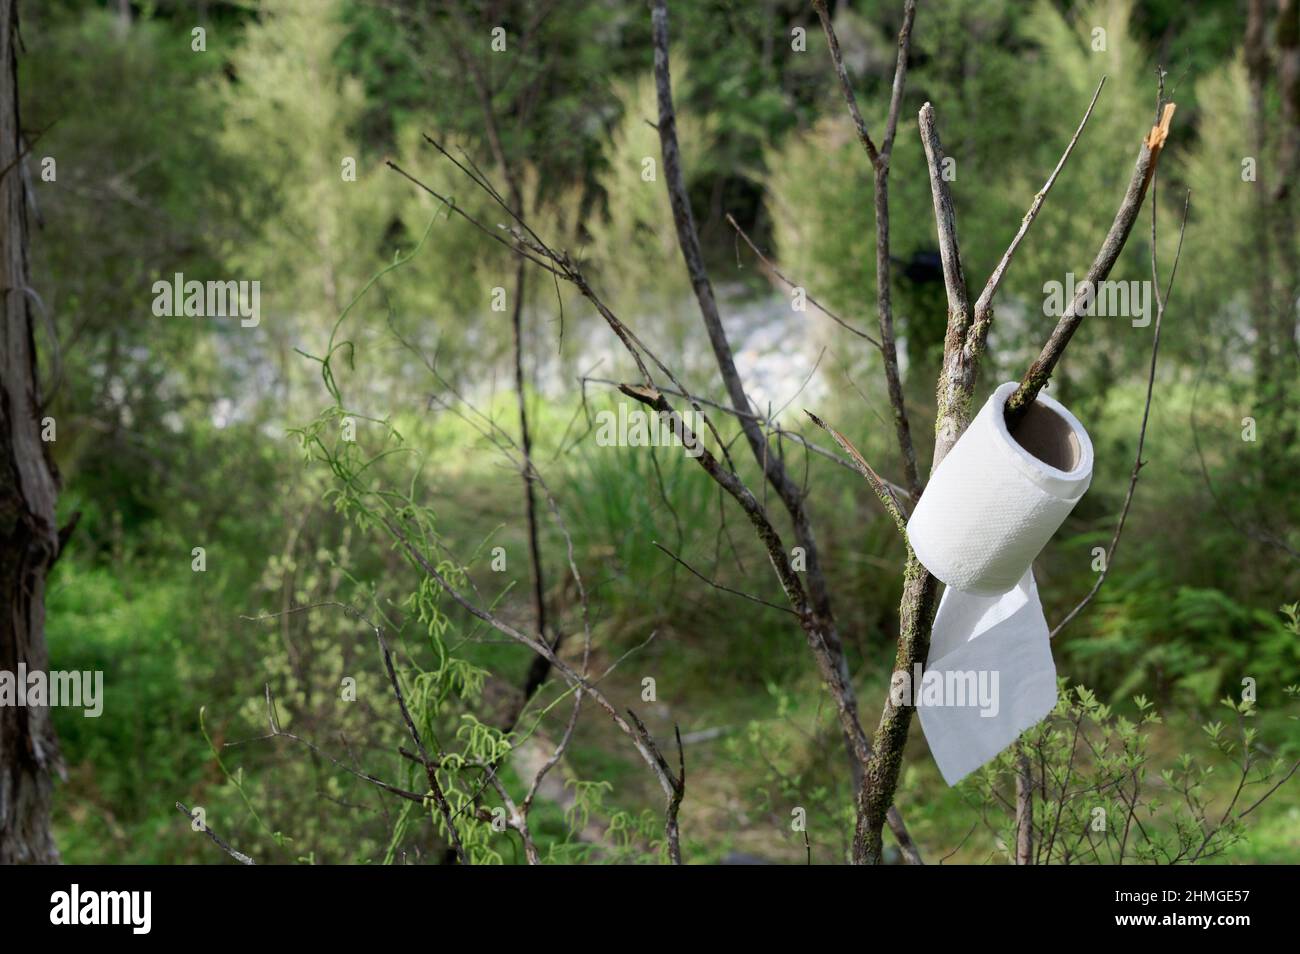 Toilettenpapier wird während des Campens an einem Baumzweig aufgehängt. Dies deutet darauf hin, dass die Lagerklo leer ist. Stockfoto